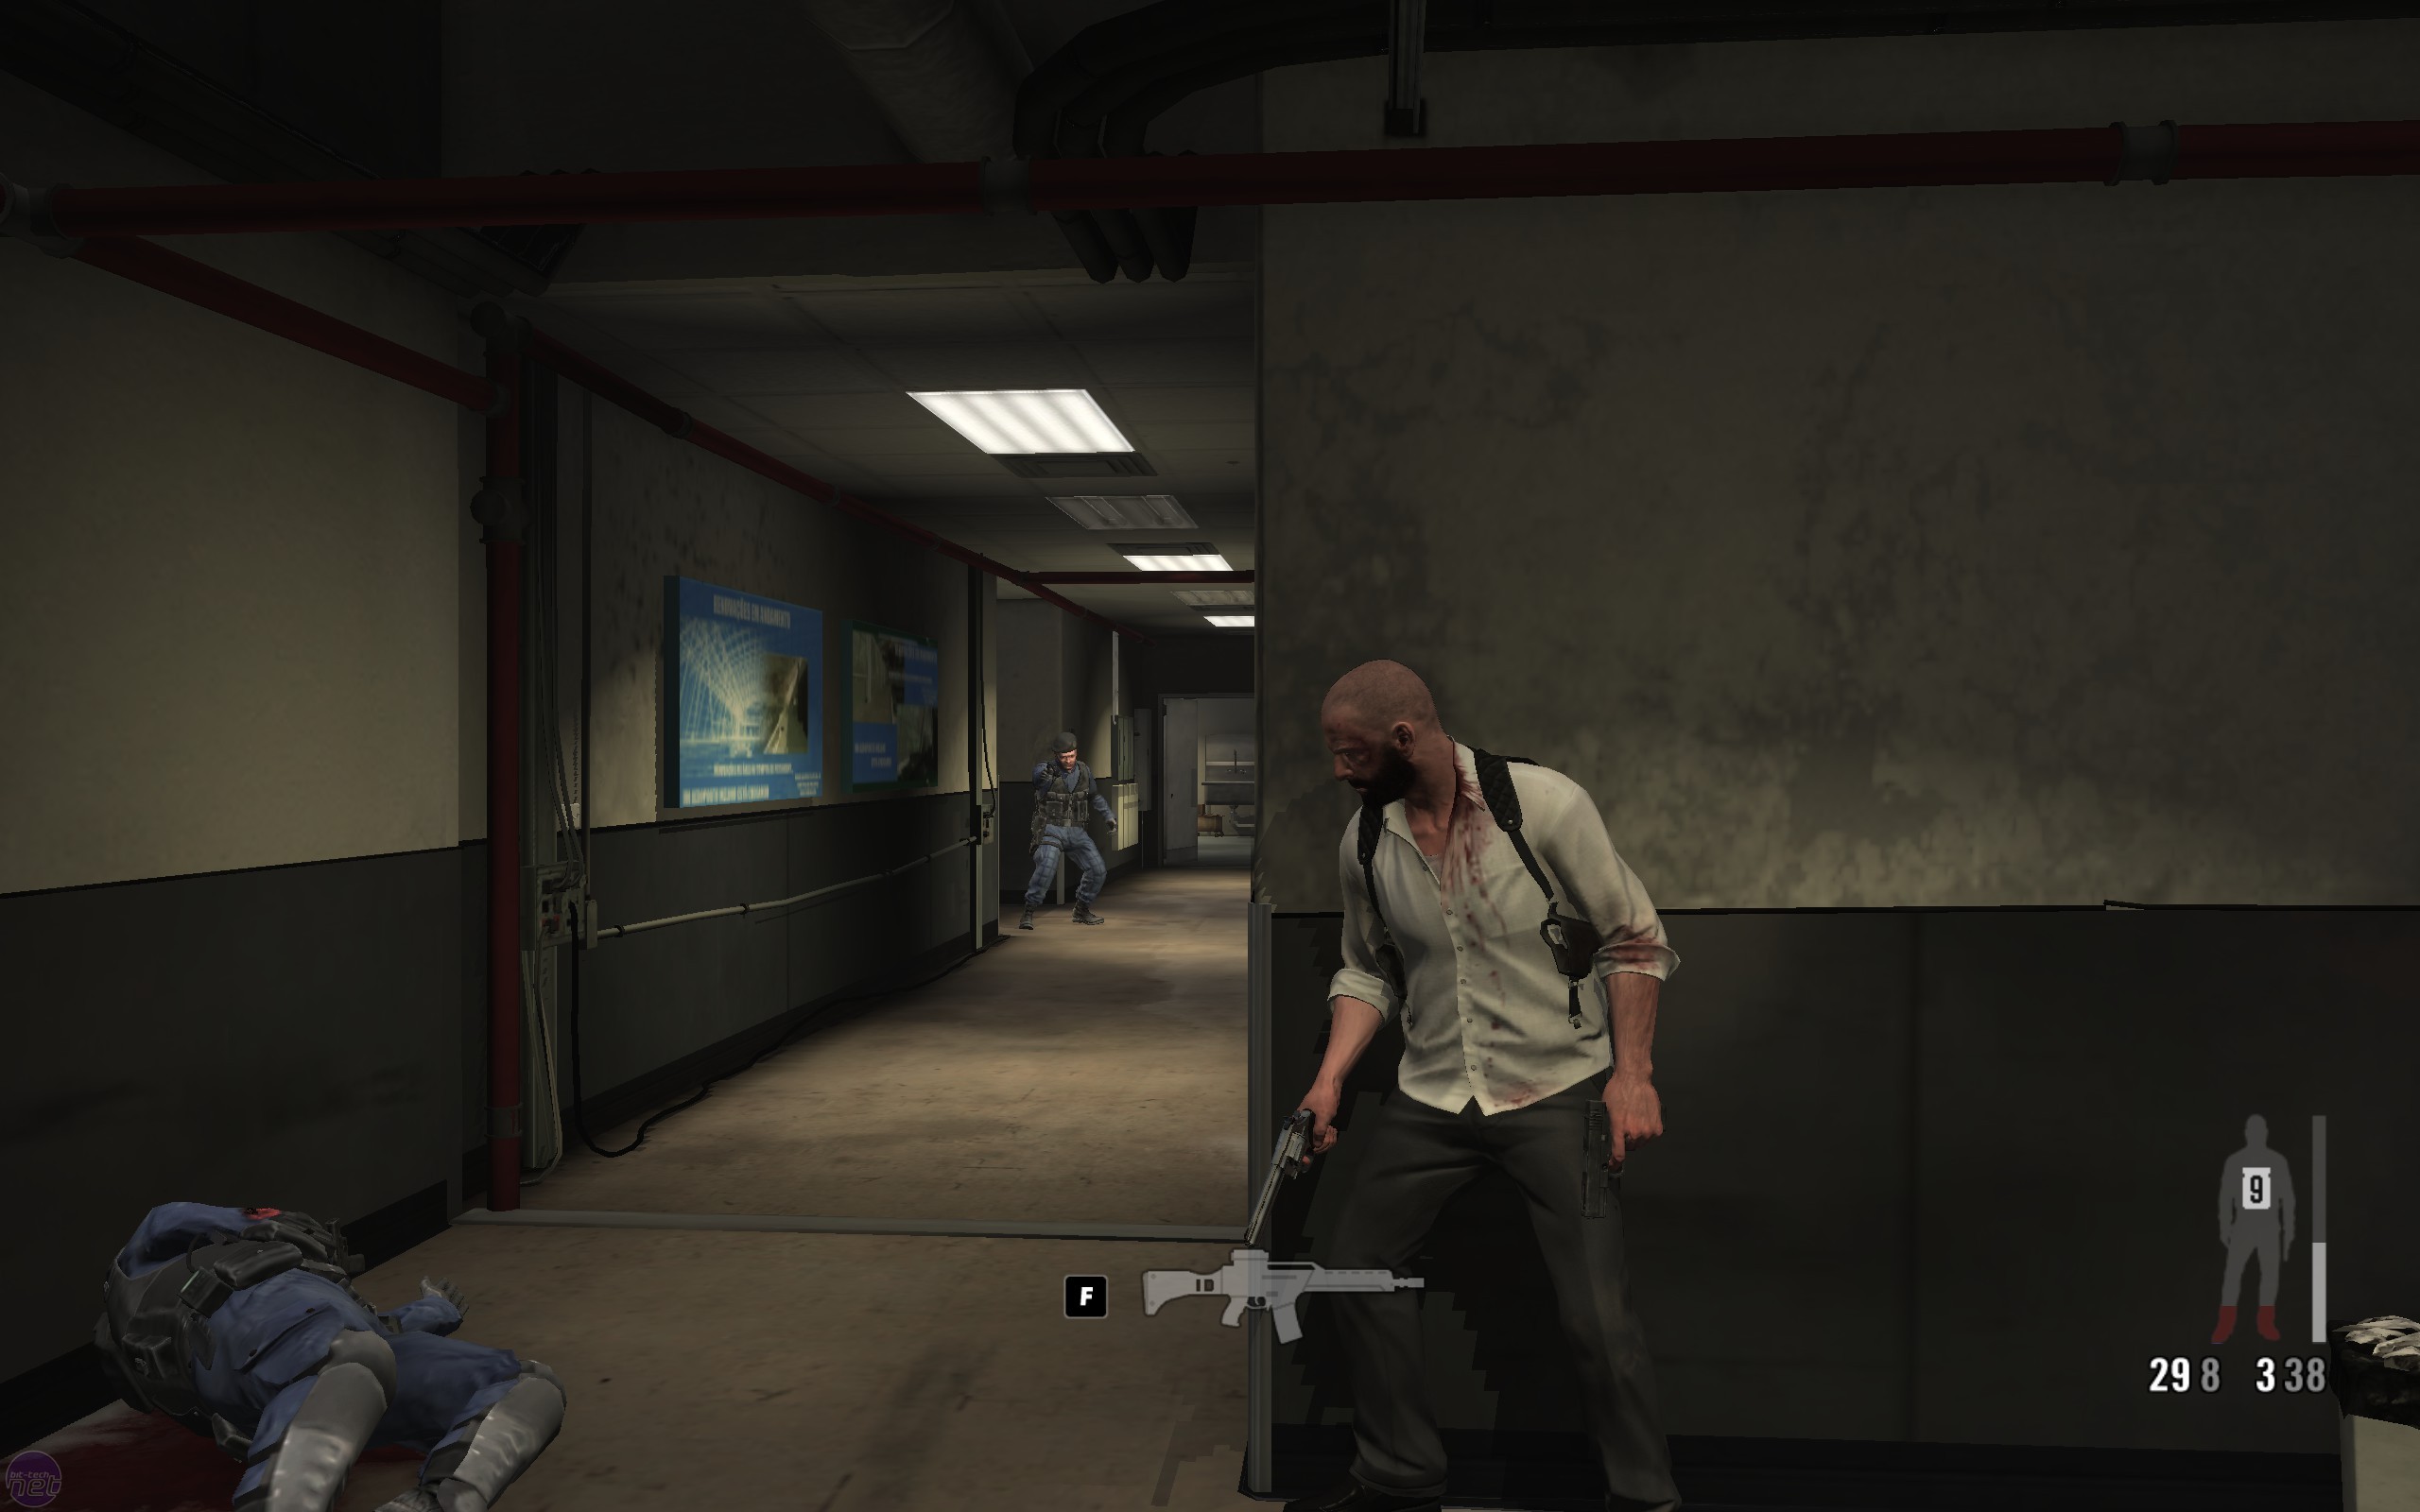 Requisitos de Max Payne 3 e como fazer download no Xbox 360, PS3 e PC